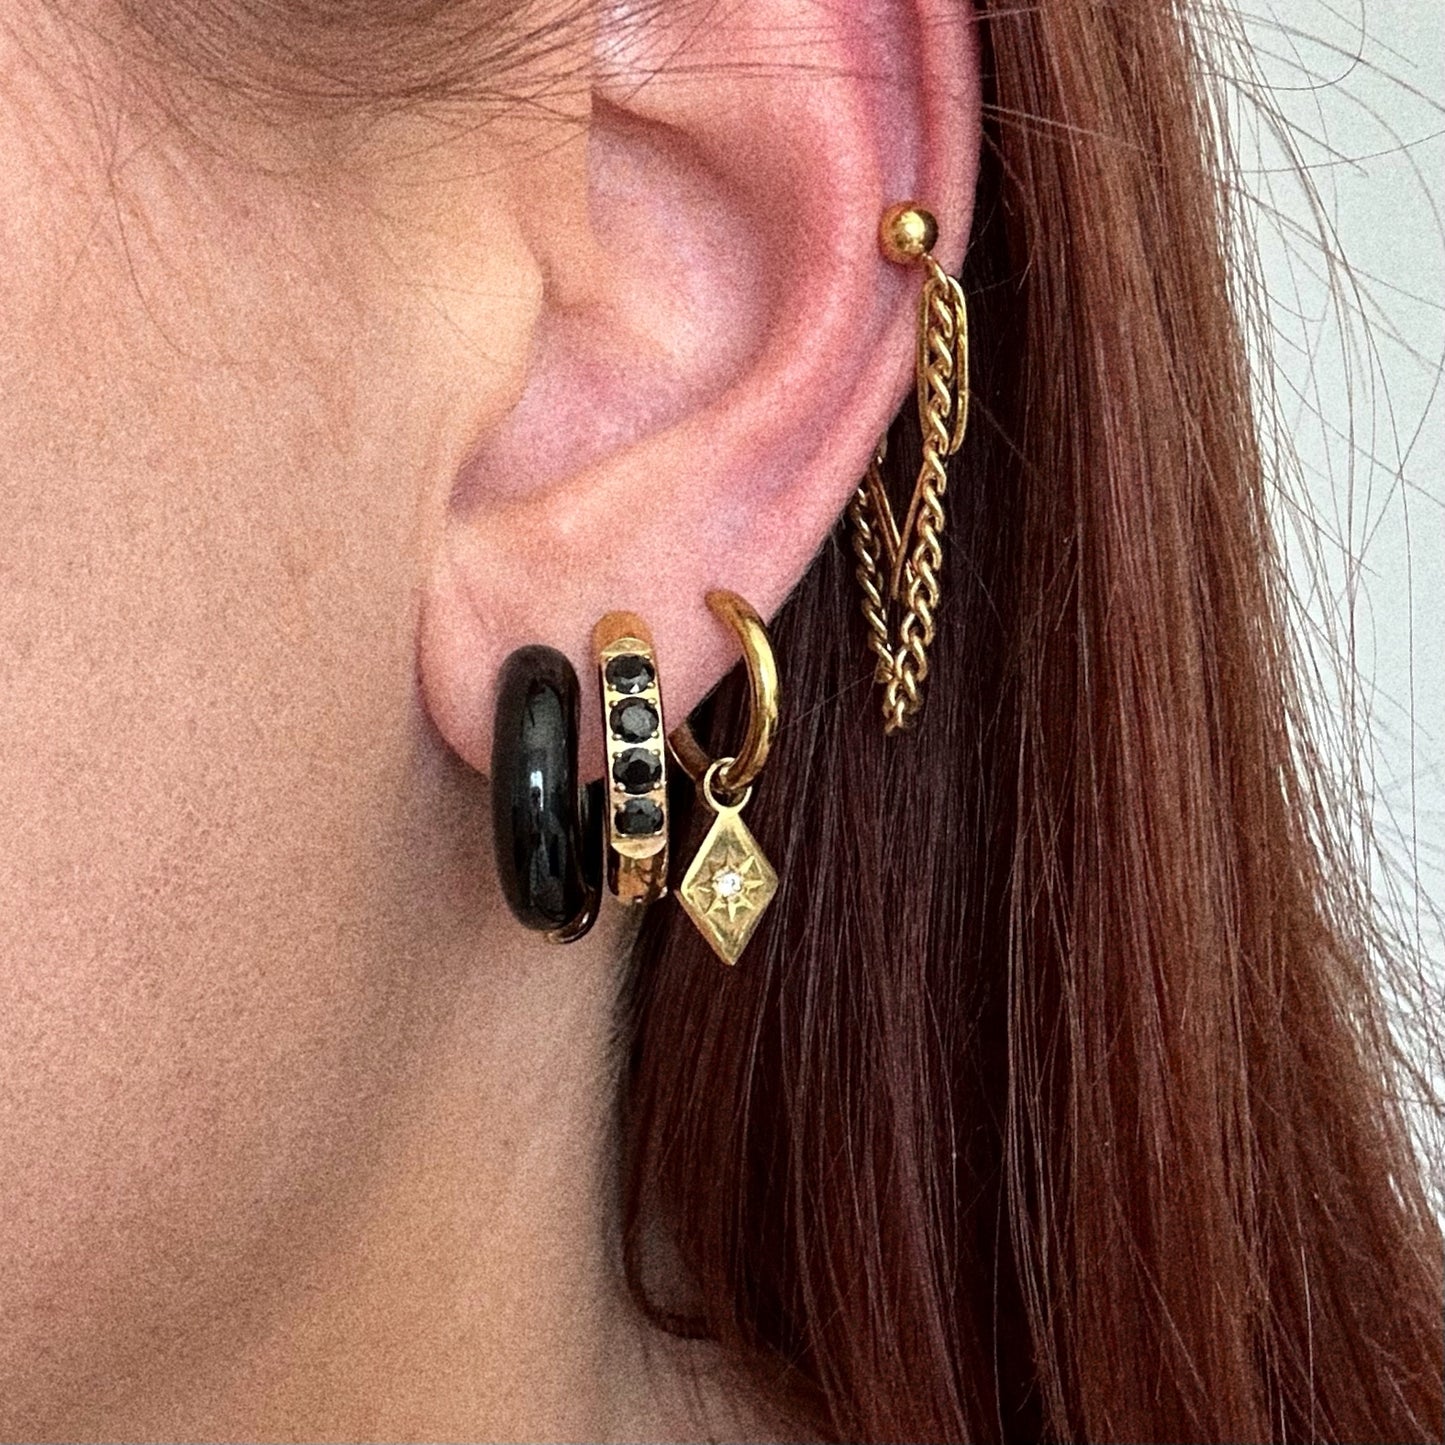 The Evangeline Earrings